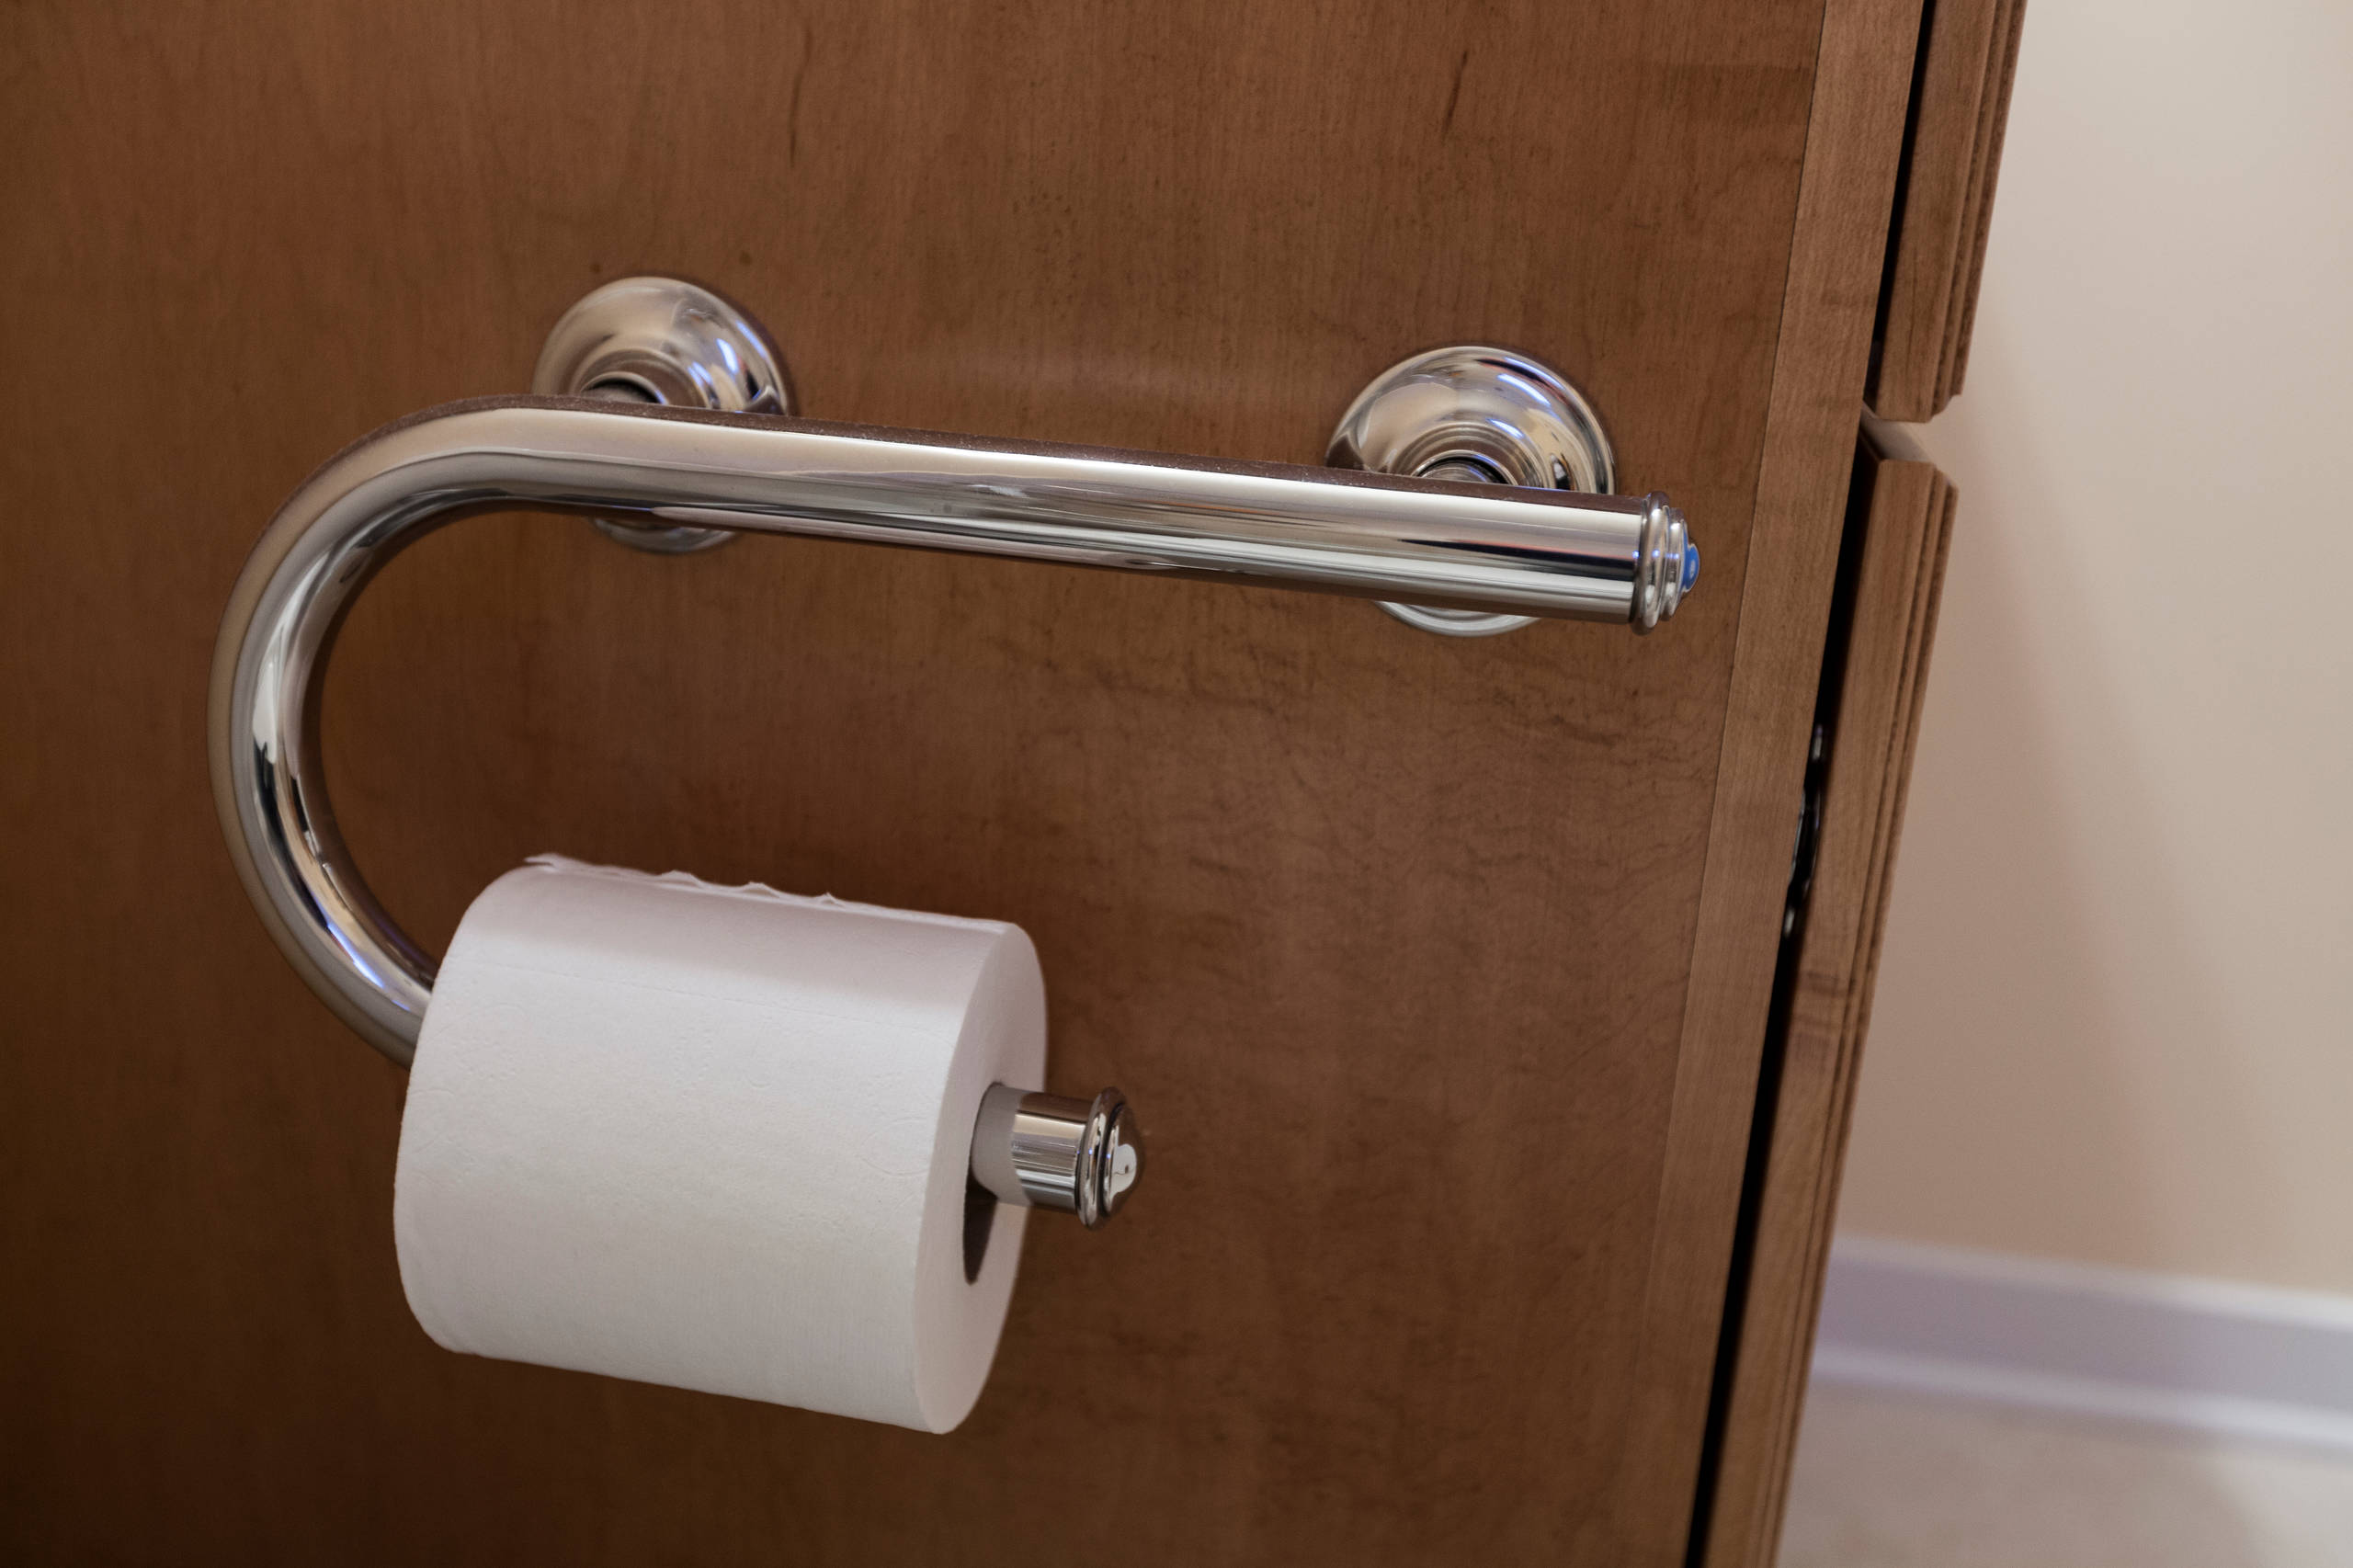 Оригинальный держатель для туалетной бумаги своими руками - Технології - Статьи